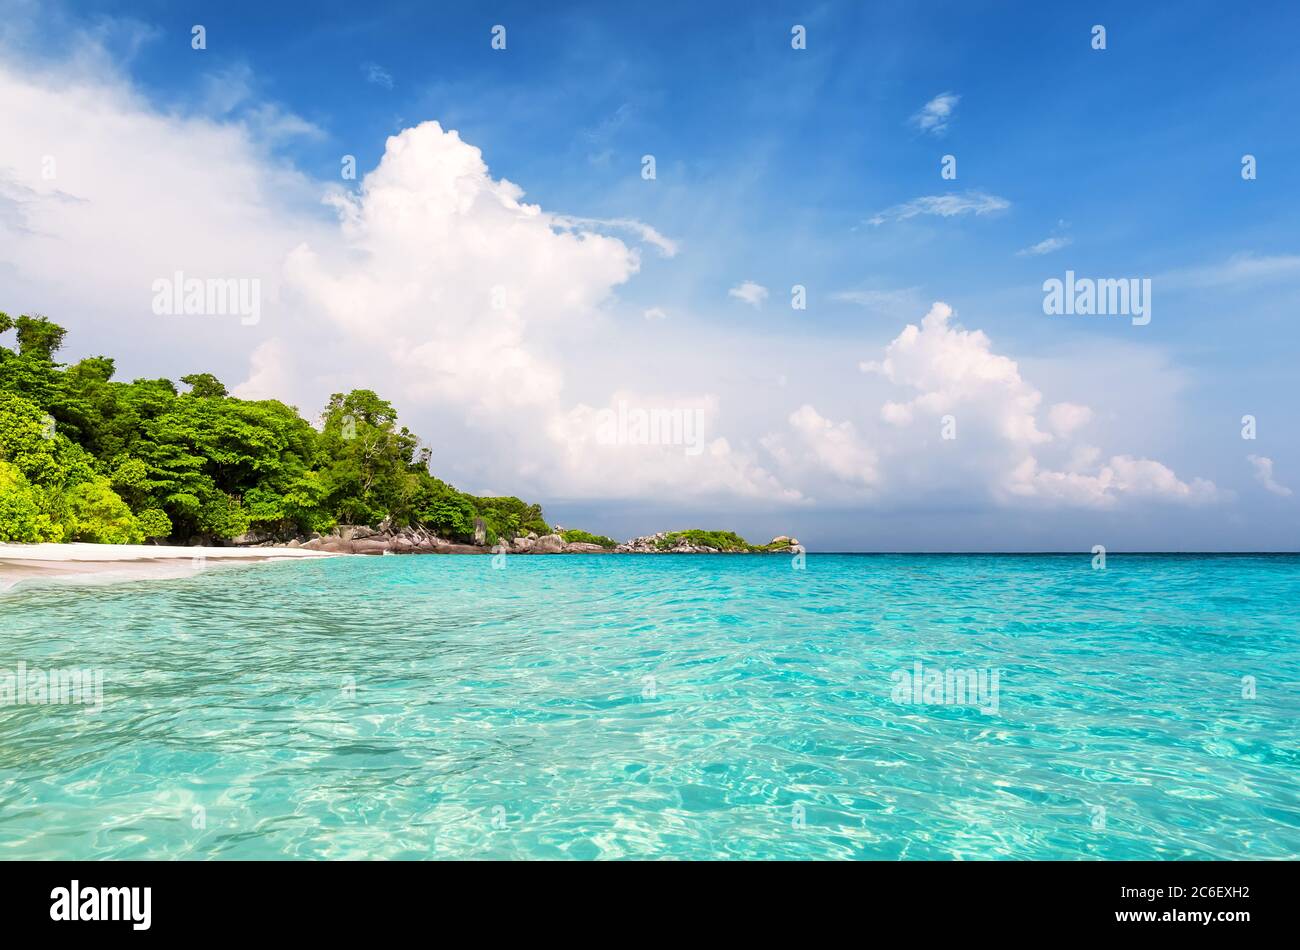 Schöner Strand und blauer Himmel auf Similan Inseln, Thailand. Urlaub Urlaub Urlaub Hintergrund Wallpaper. Blick auf schöne tropische Strand.Reisen Sommer Urlaub b Stockfoto